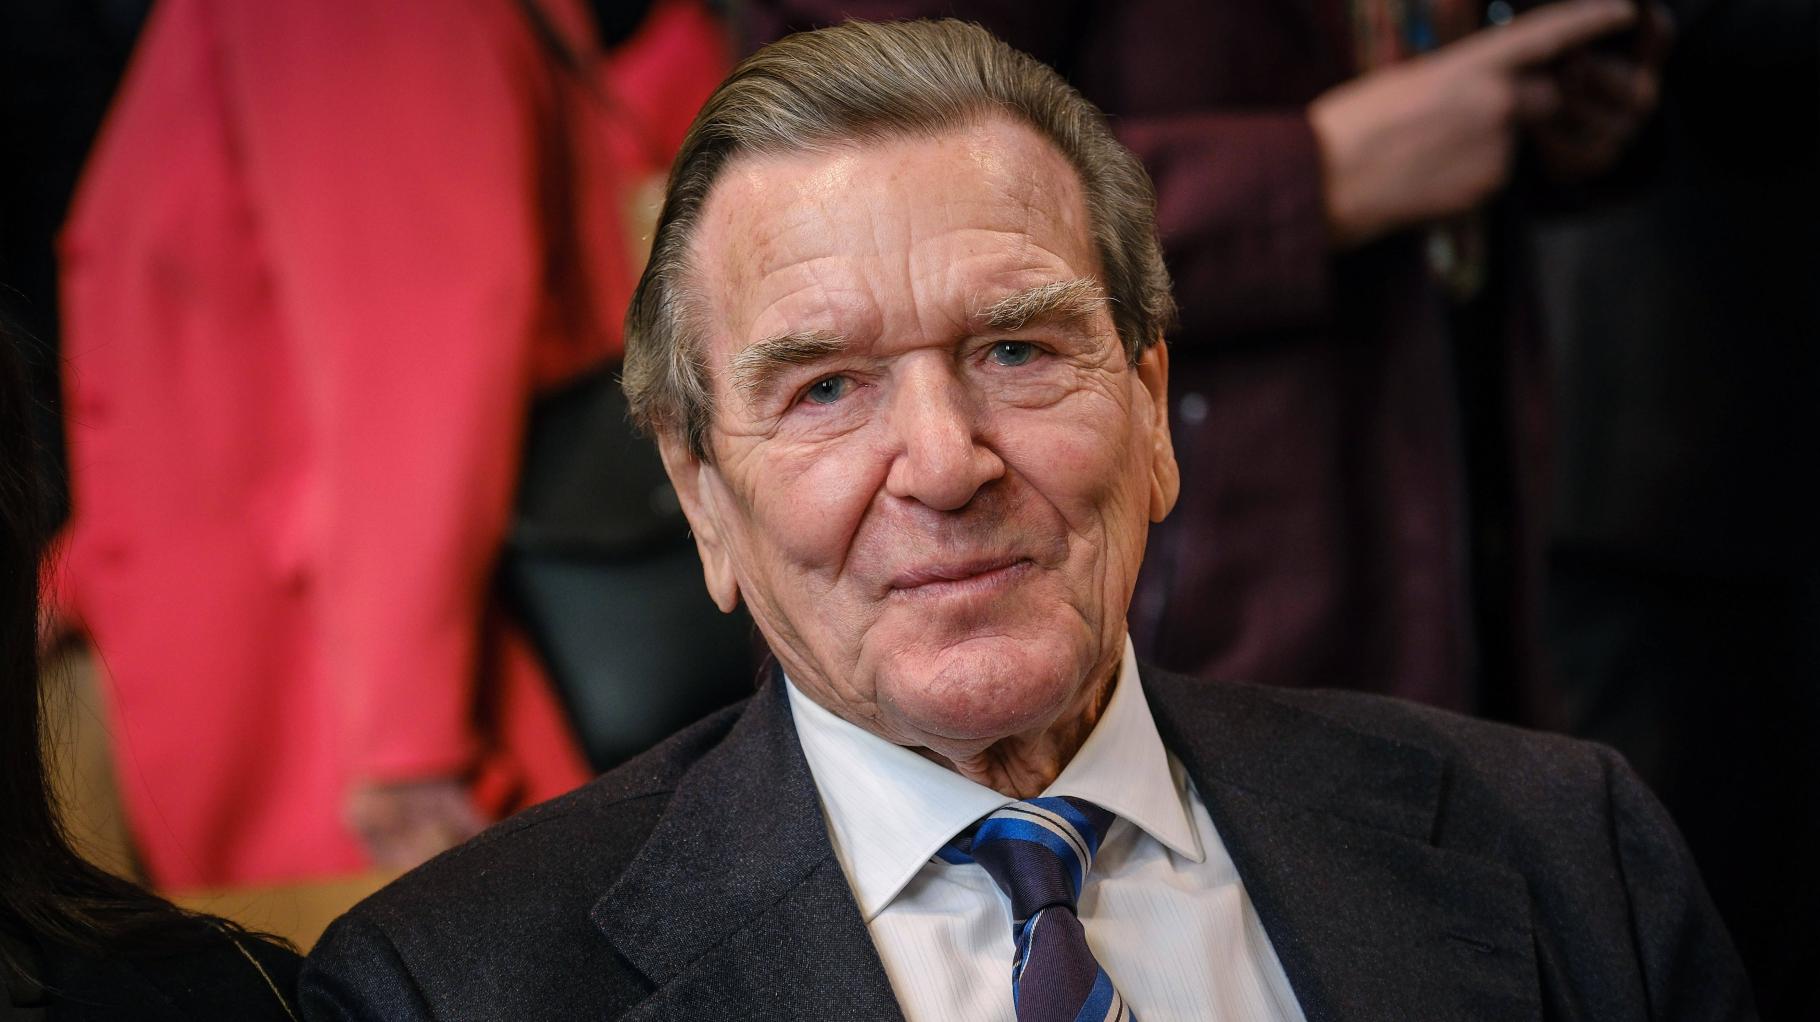 Gerhard Schröder feiert 80. Geburtstag in Promi-Restaurant – wer dabei war